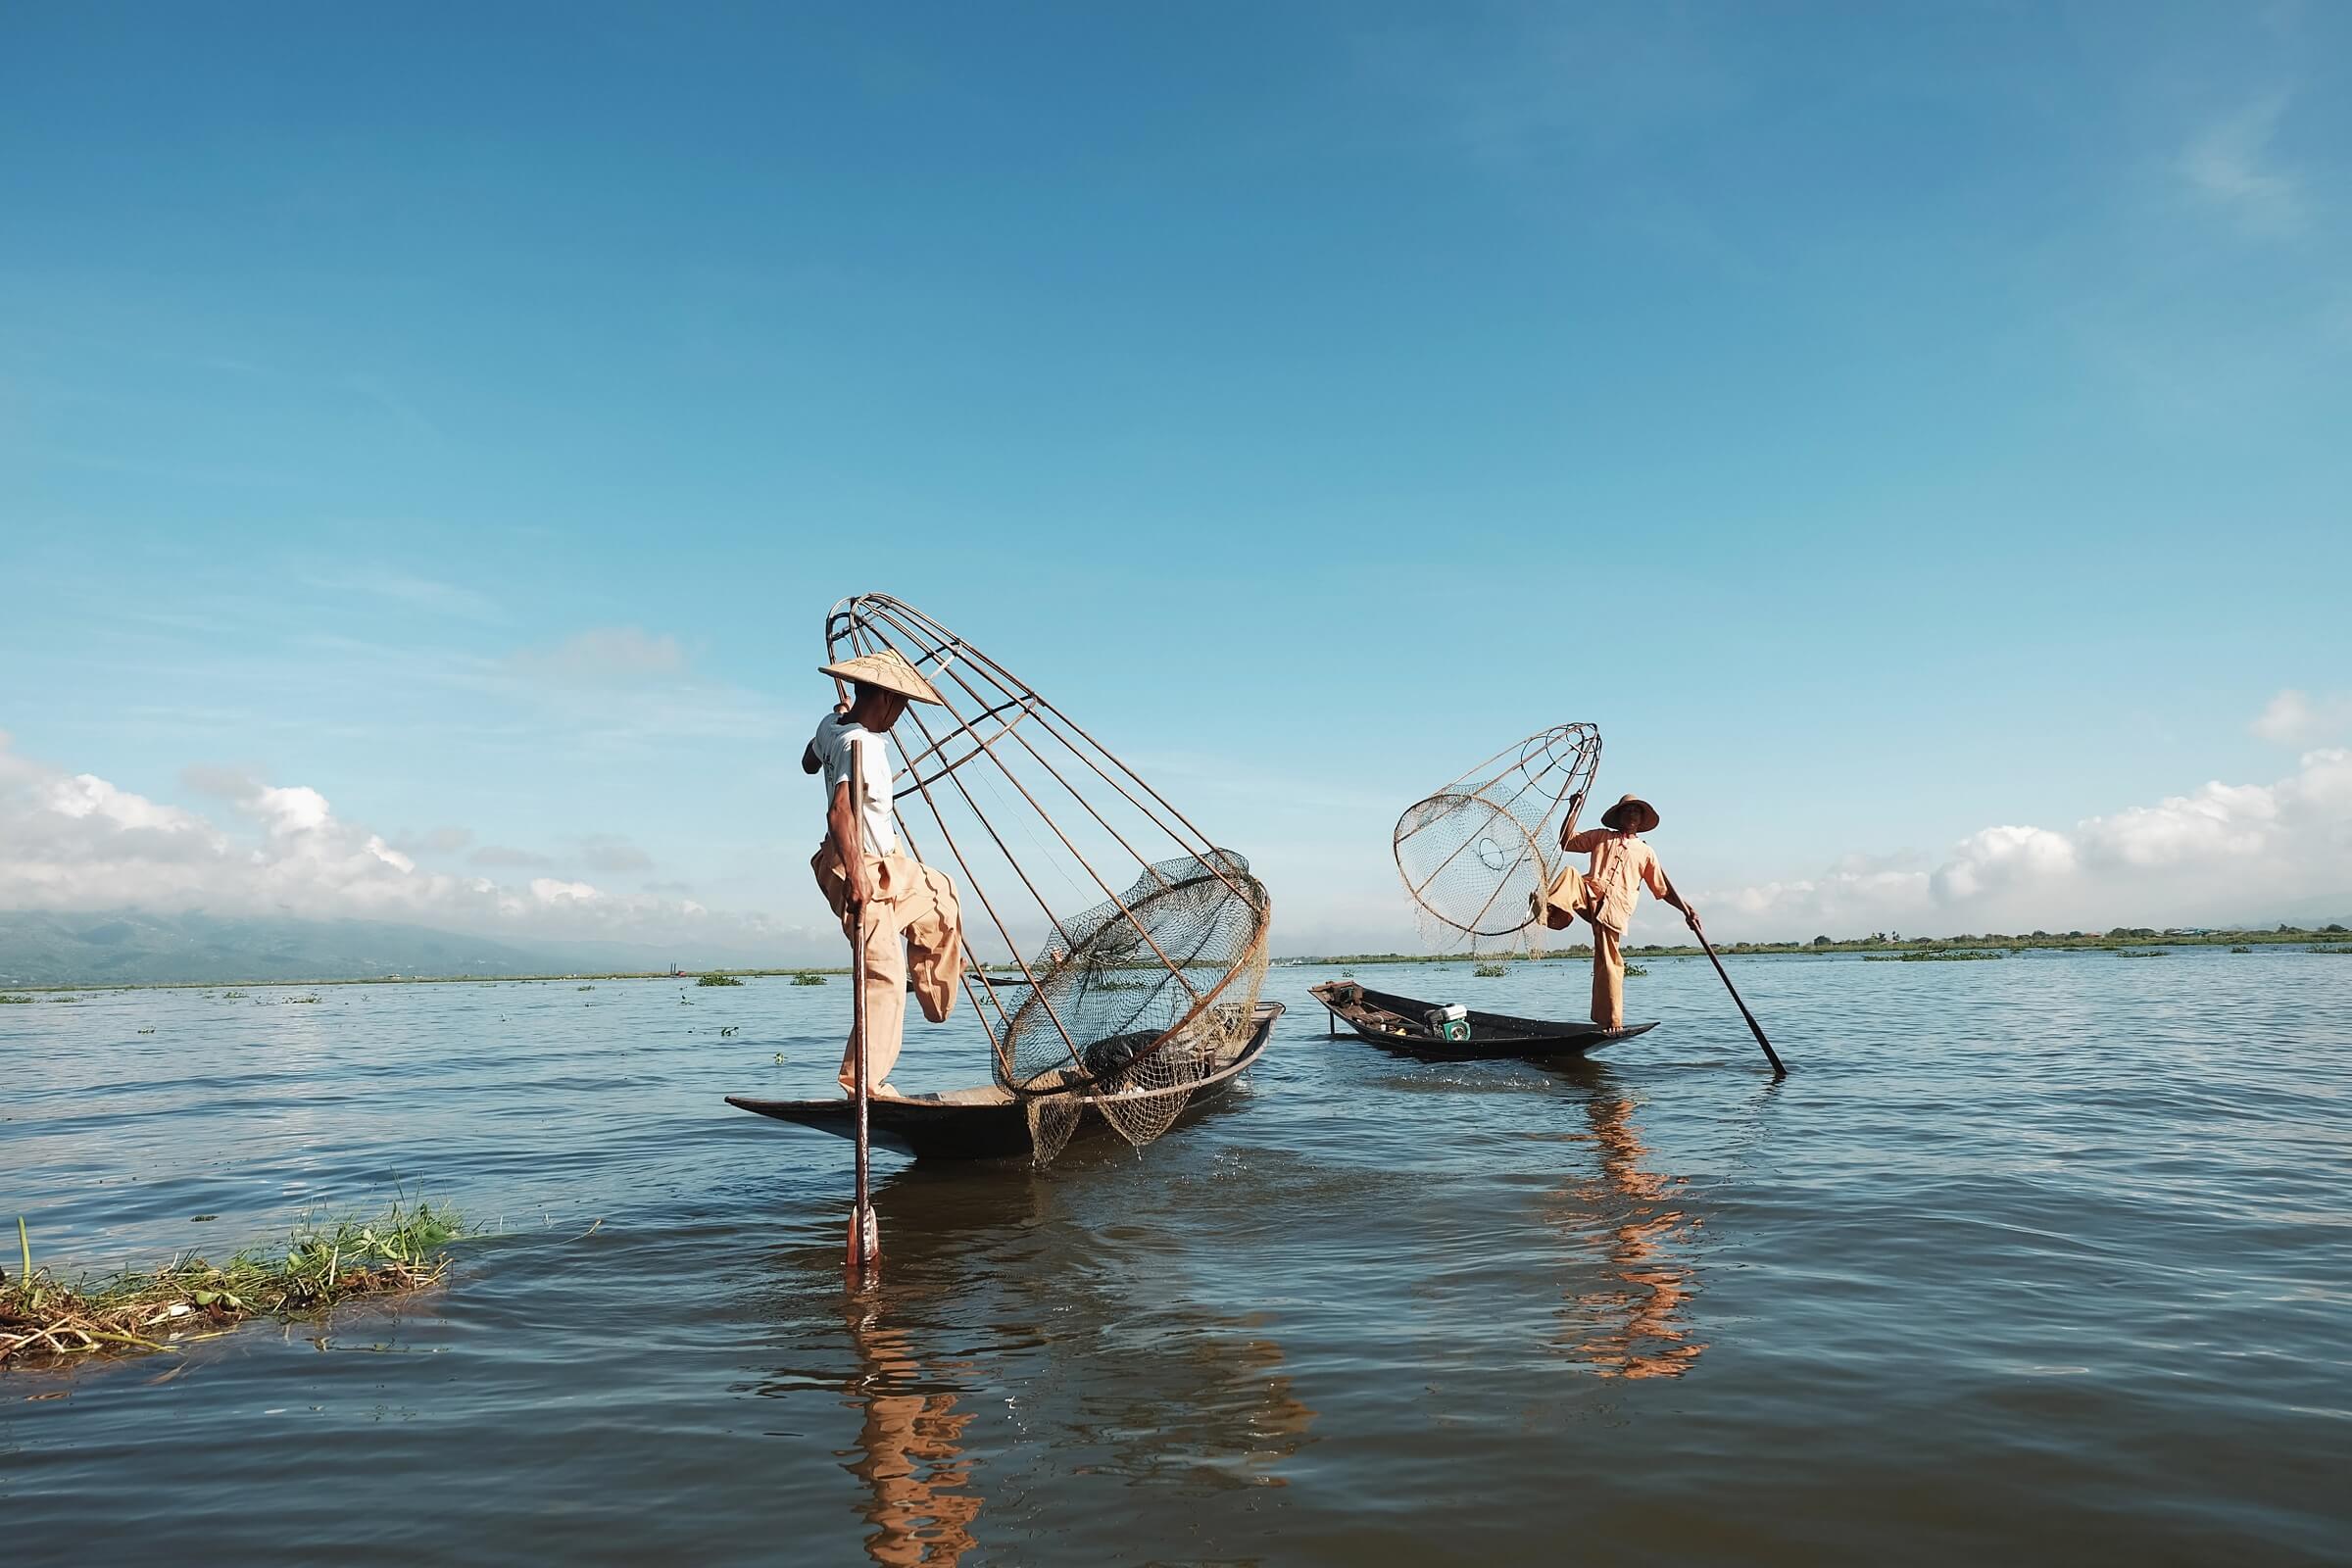 Thai Fishermen wearing traditional pants